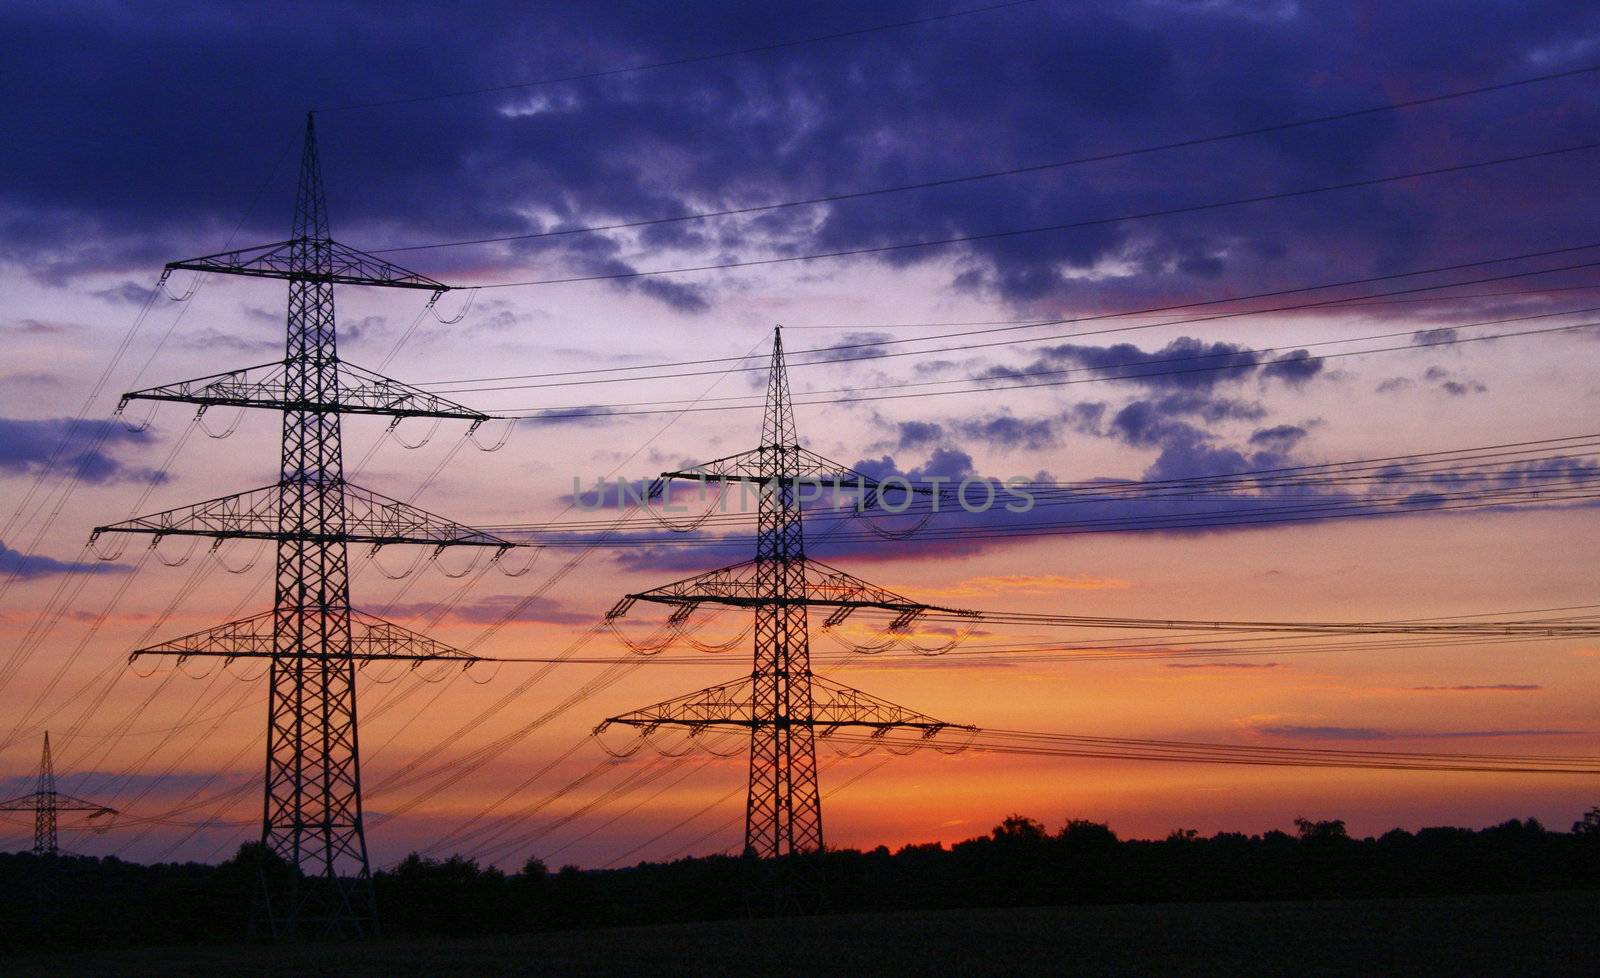 Strommasten in Nordrhein-Westfalen / Power poles in North Rhine-Westphalia